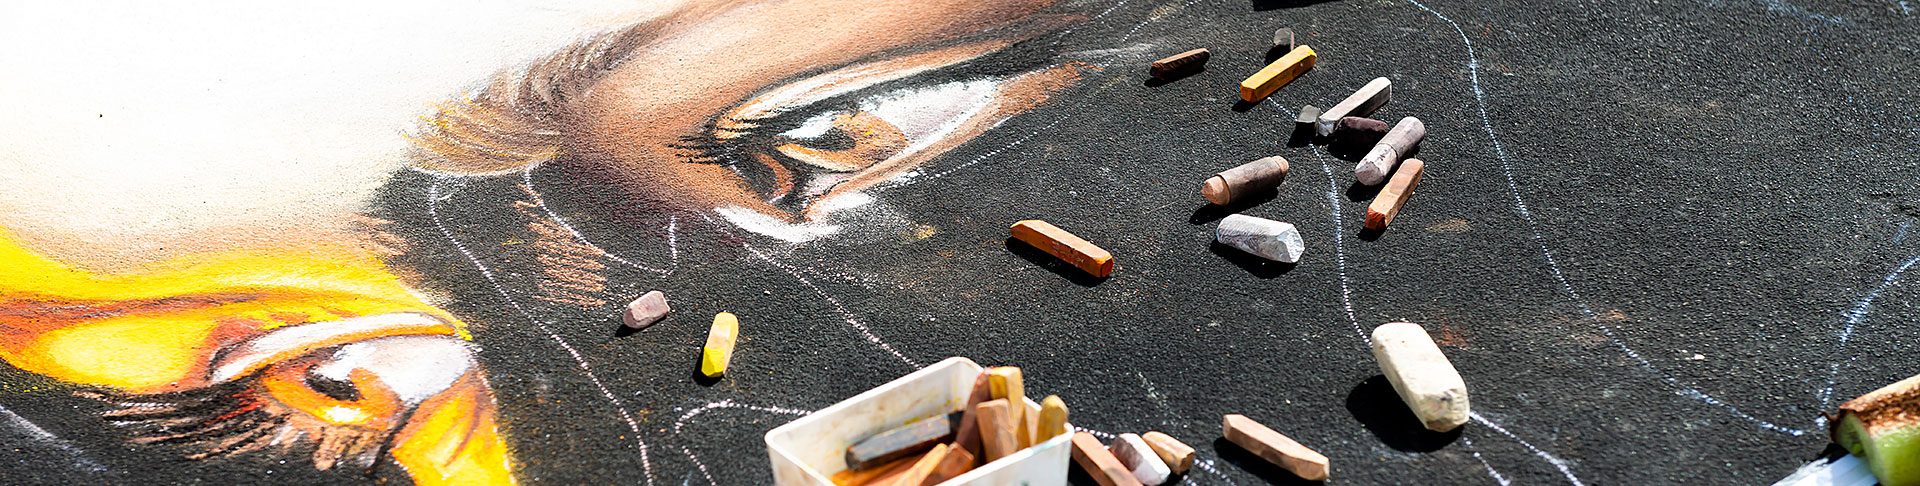 chalk scattered over half eye drawn on asphalt